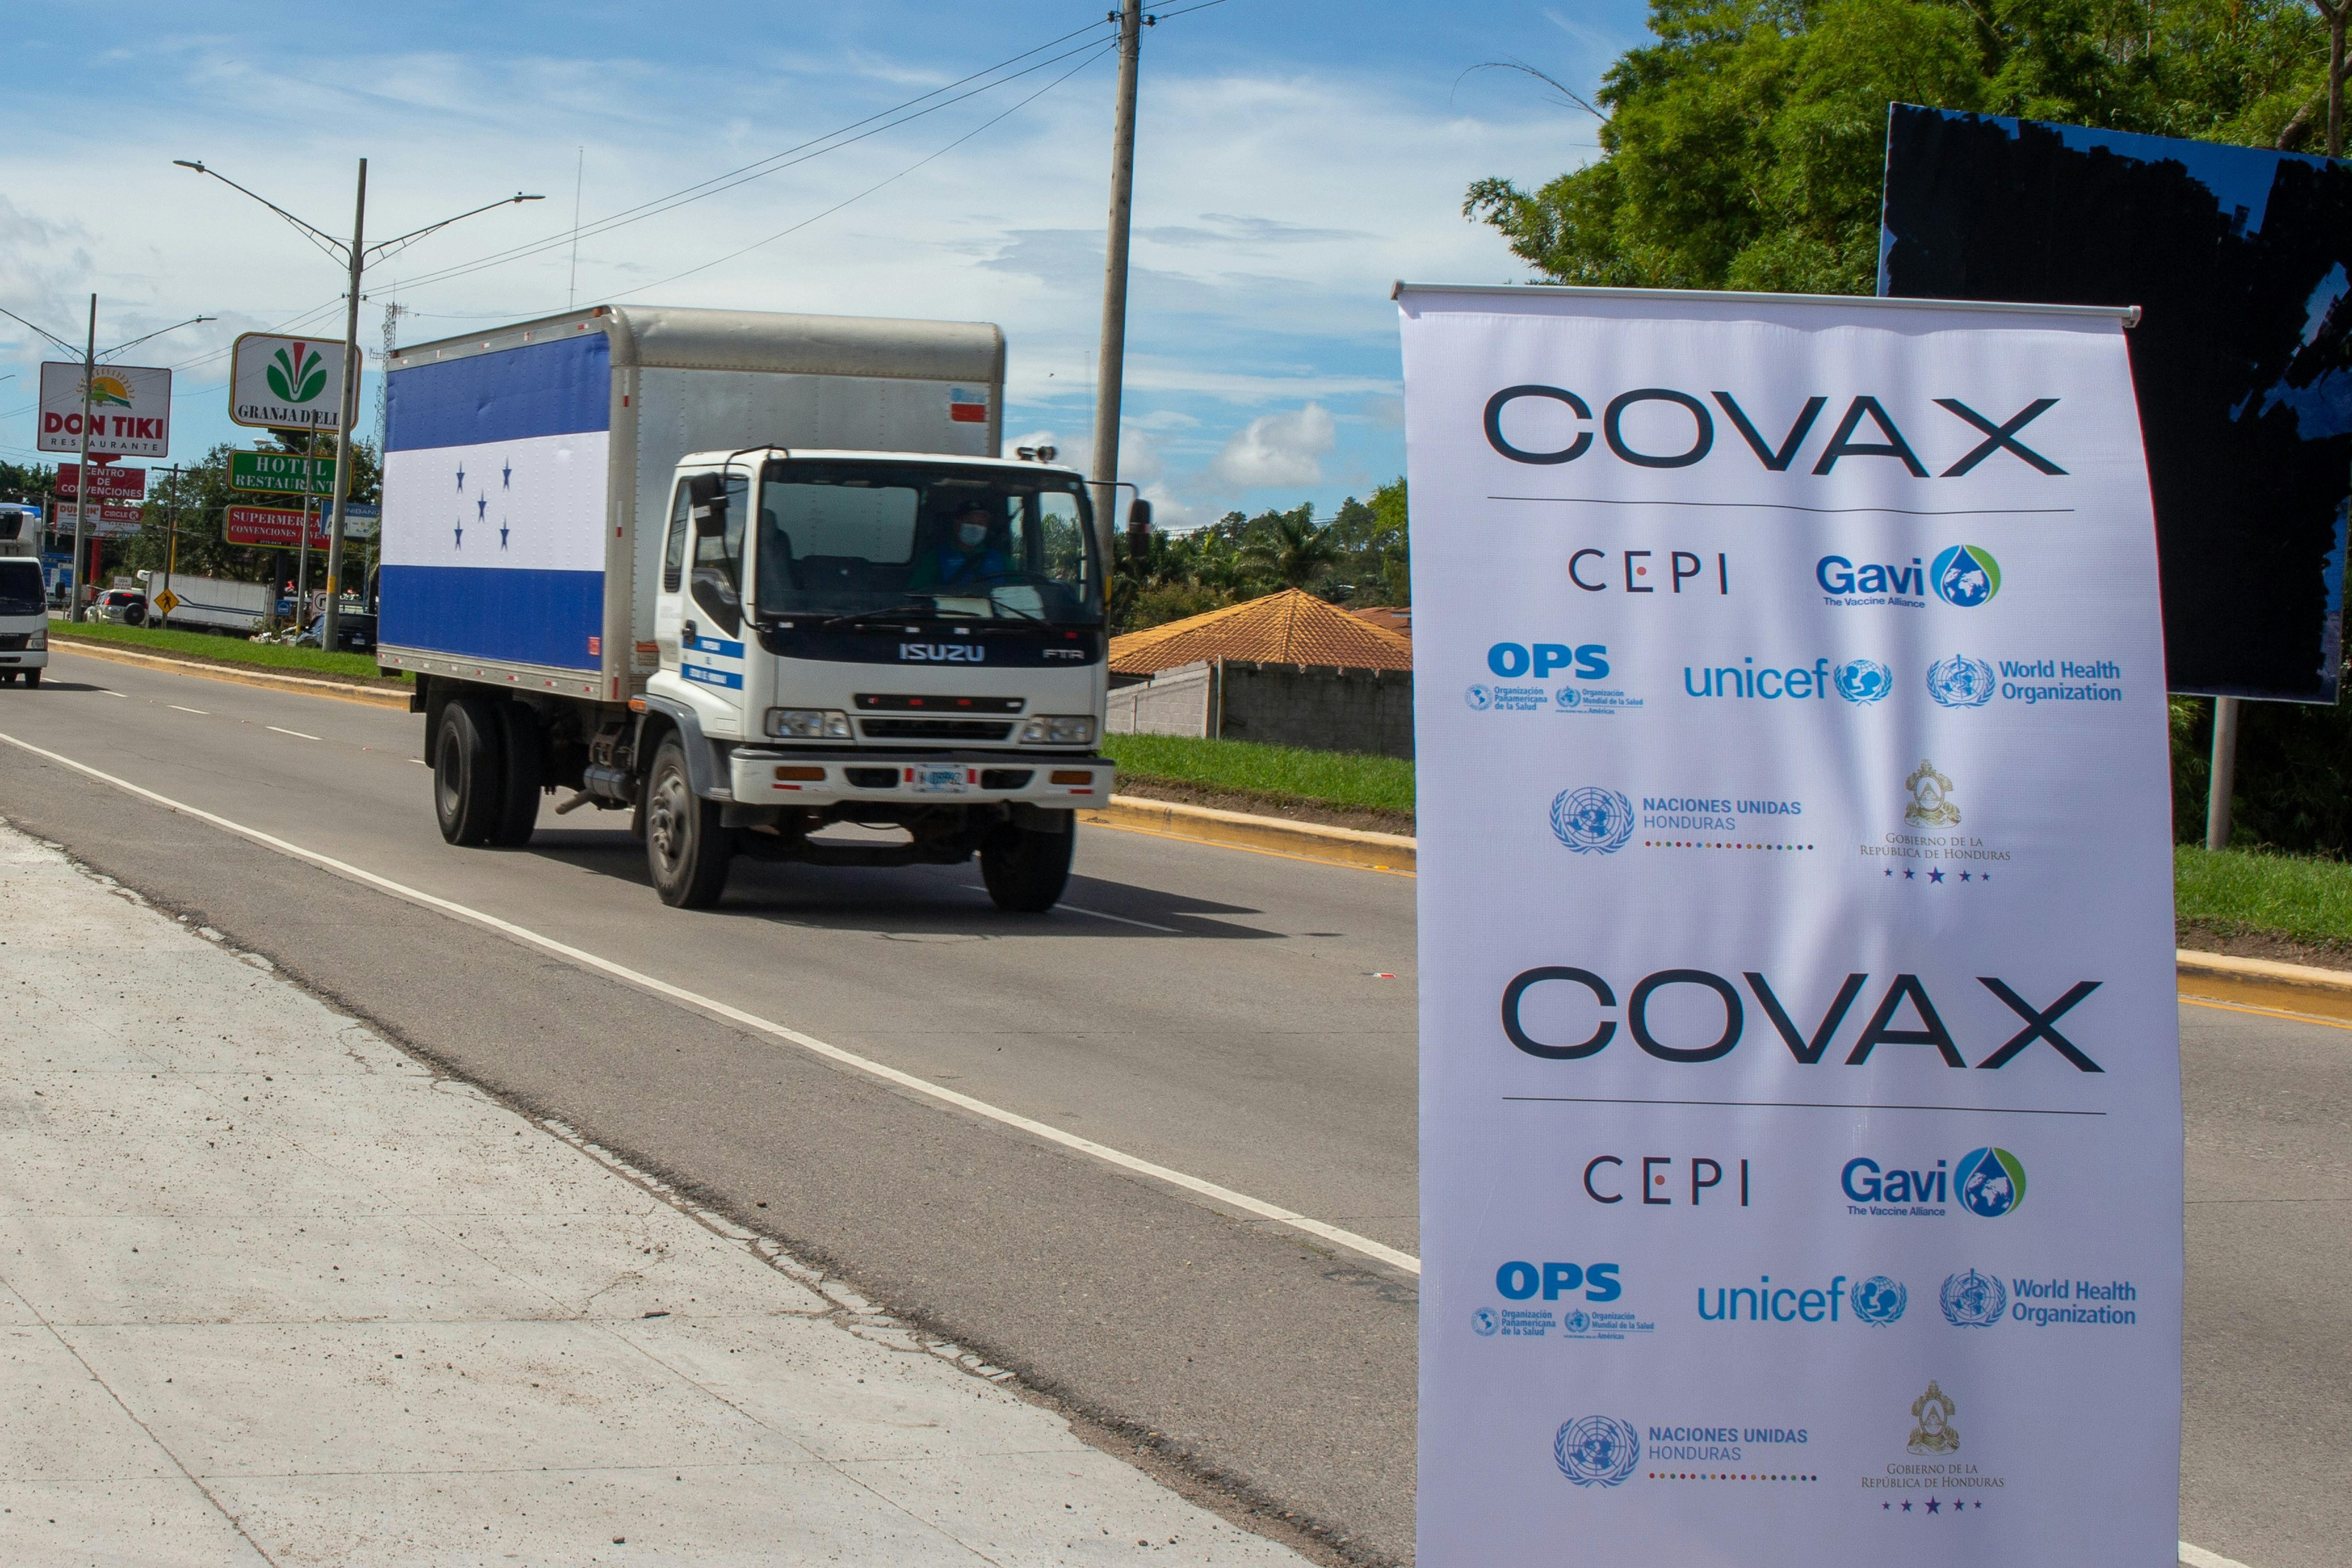 L'arrrivo dei camion frigo contenenti i vaccini anti COVID19 in Honduras, donati dagli USA